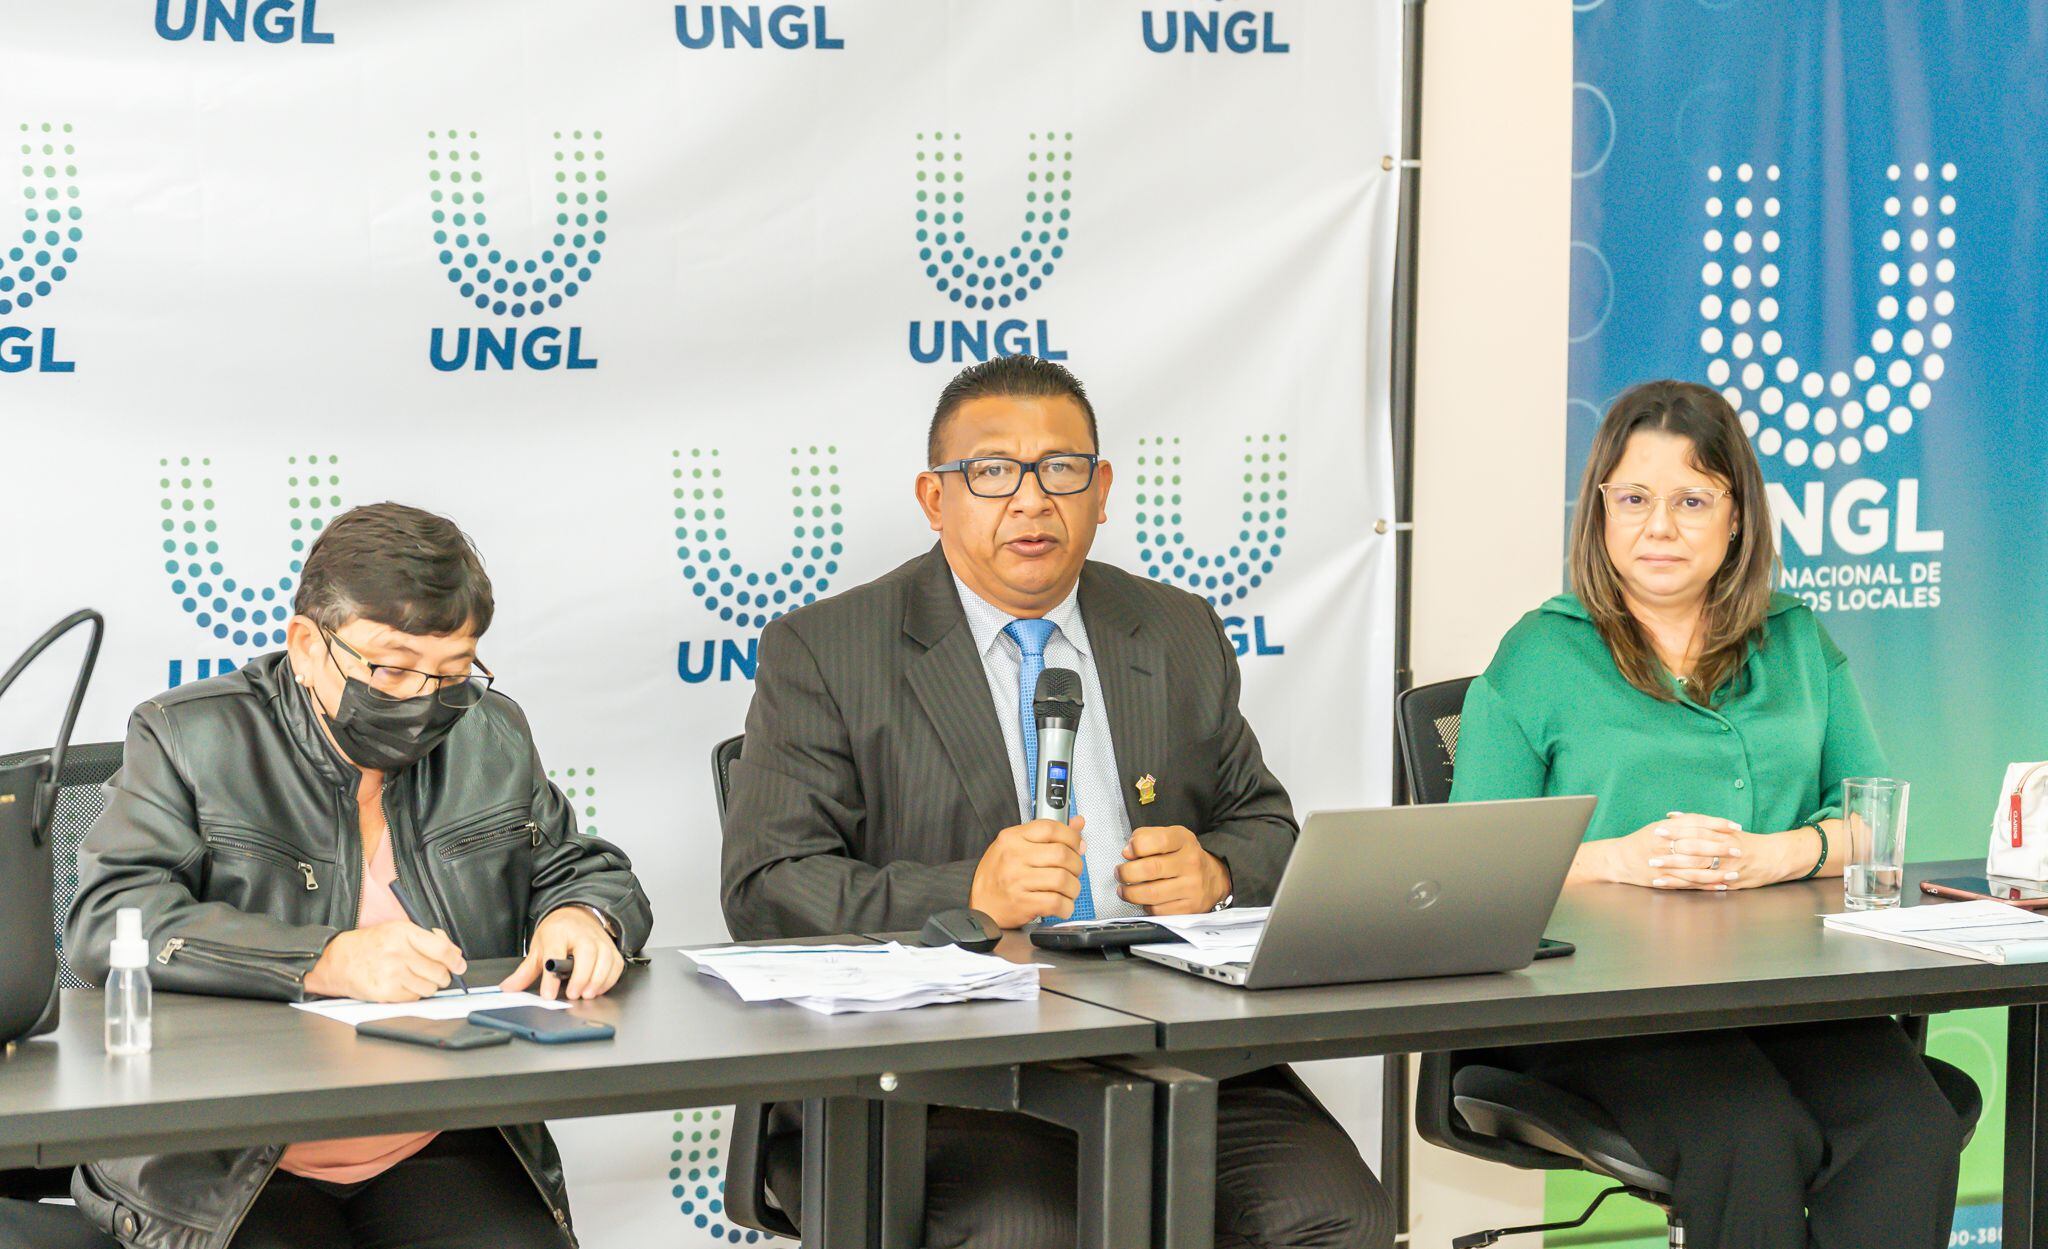 De izquierda a derecha, la vicepresidenta de la UNGL y alcaldesa de Jiménez, Lisseth Fernández Quirós; el presidente de la UNGL y alcalde de Buenos Aires, José Rojas Méndez; y la directora ejecutiva de la UNGL, Karen Porras.